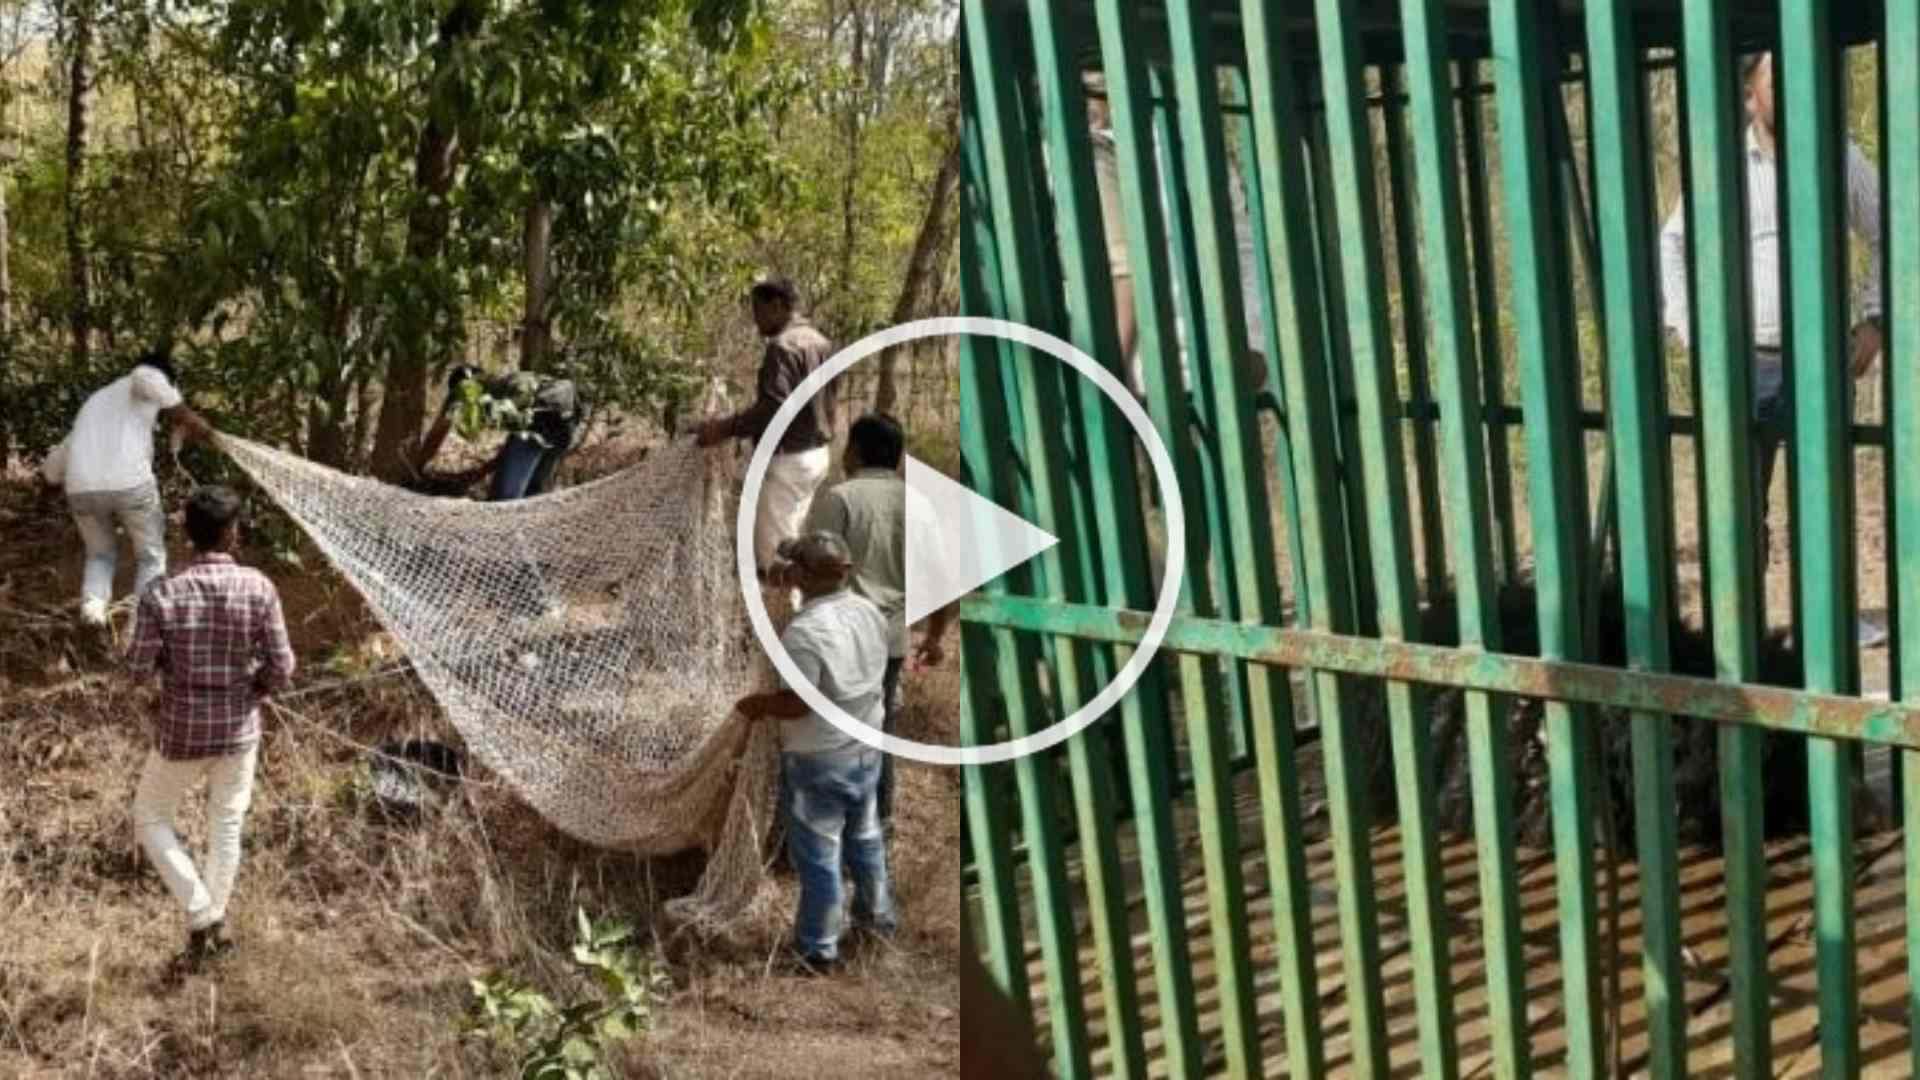 खेतों में लगी तार की फेंसिंग में फंस गया था भालू, रायपुर से पहुंची टीम ने रेस्क्यू कर जंगल में छोड़ा, देखें Video